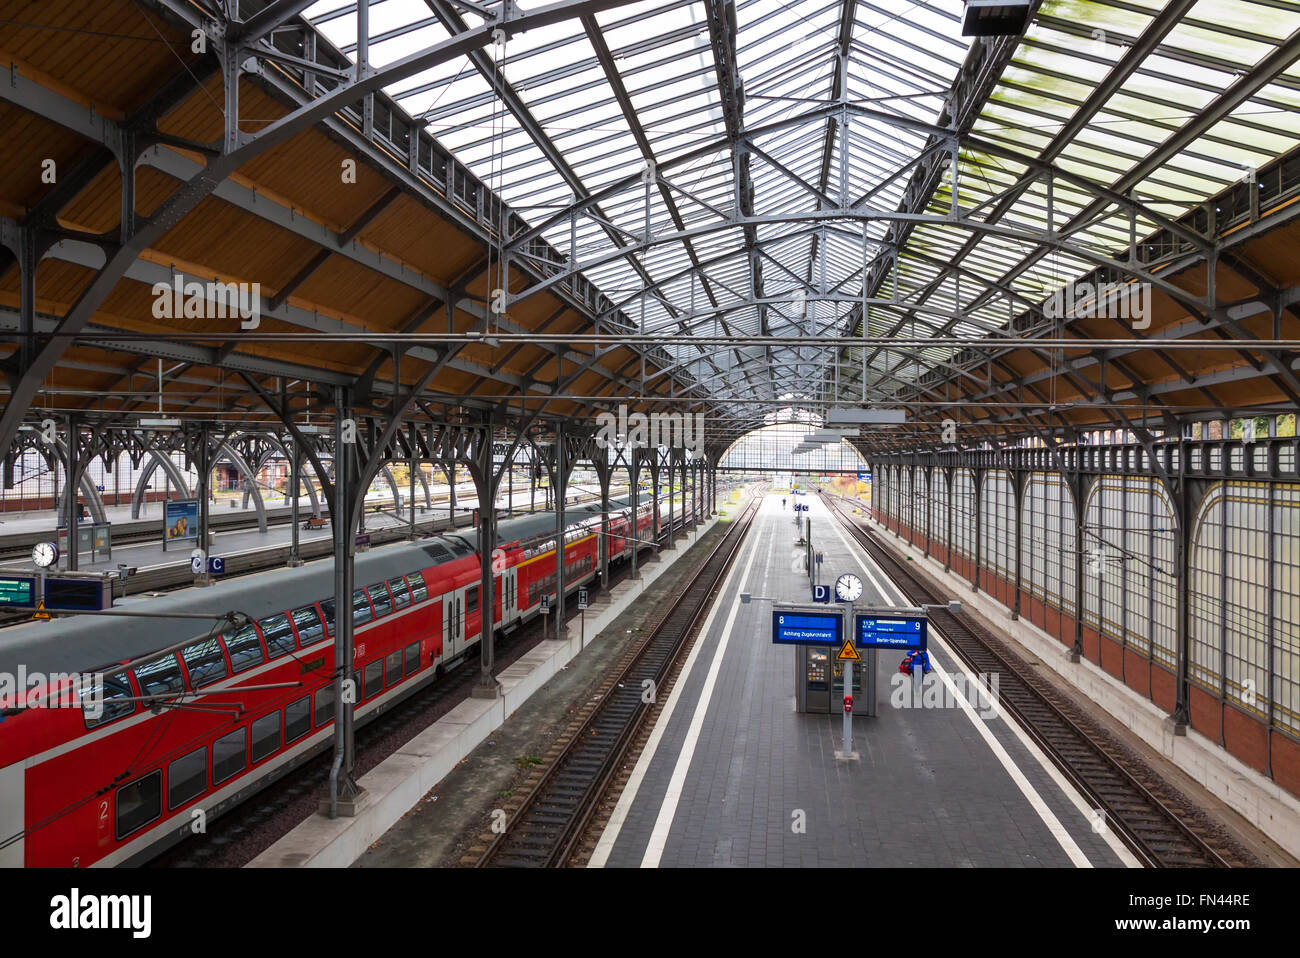 Lubeck Hbf railway station. Es la principal estación de trenes de la ciudad hanseática de Lübeck (Estado de Schleswig-Holstein), Alemania Foto de stock